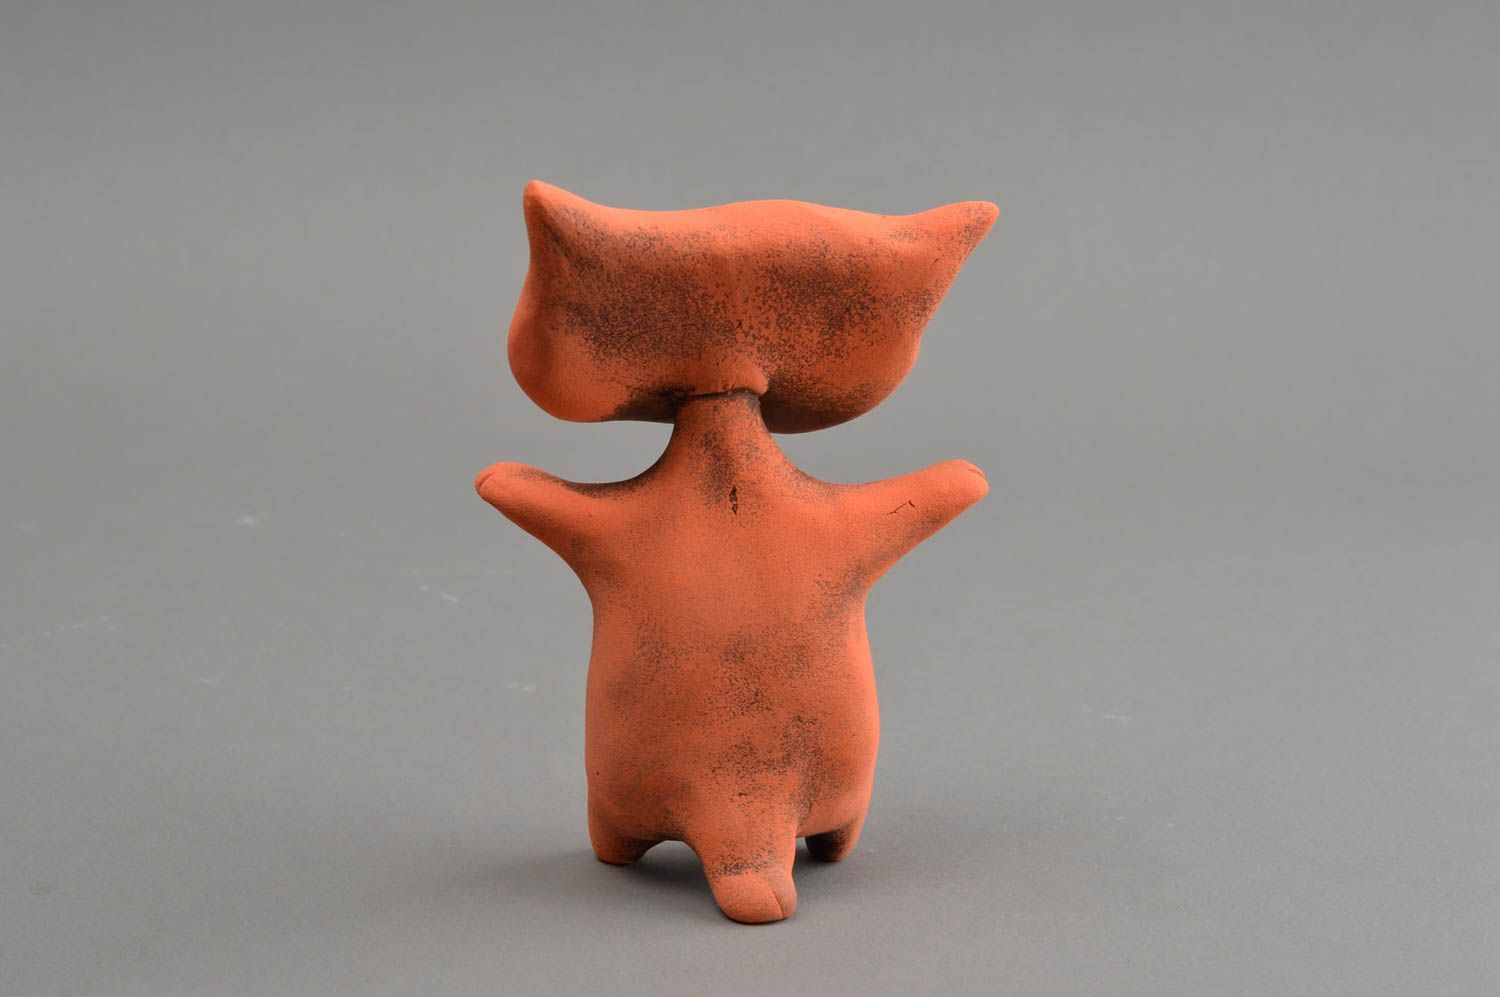 Оранжевая глиняная статуэтка ручной работы в виде кота расписанная красками фото 5